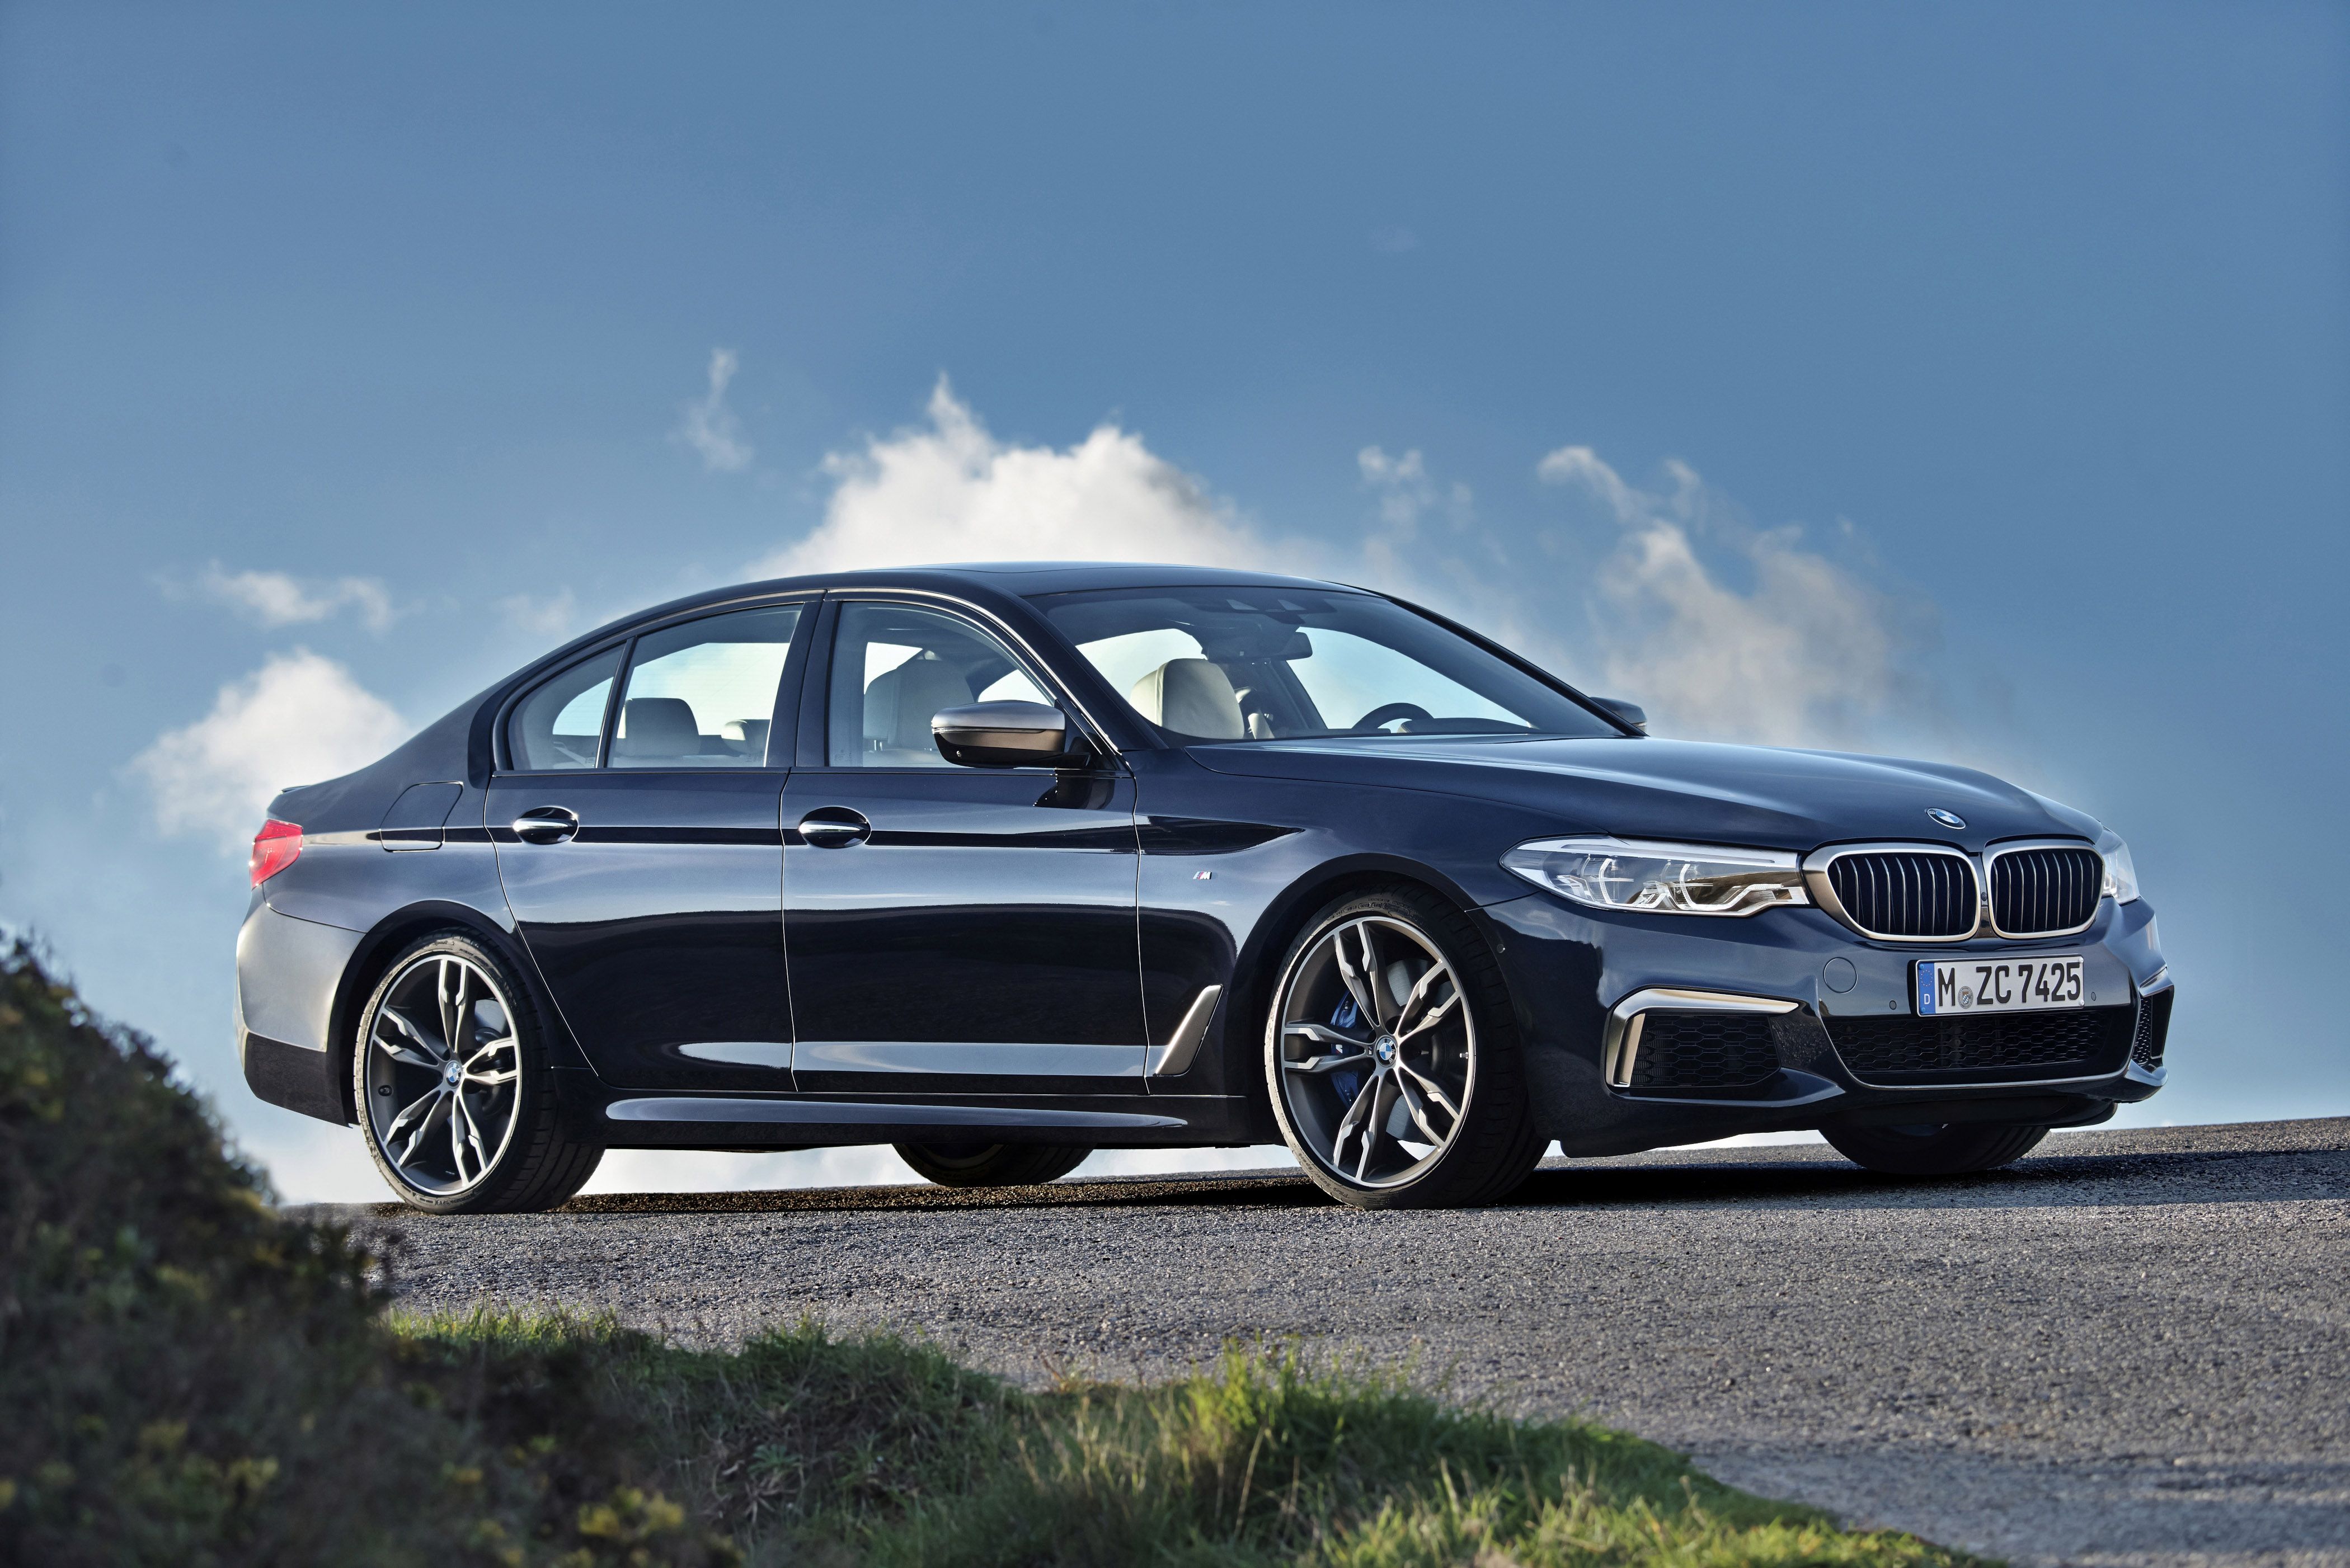 BMW 520d G30 specs, quarter mile, lap times, performance data 